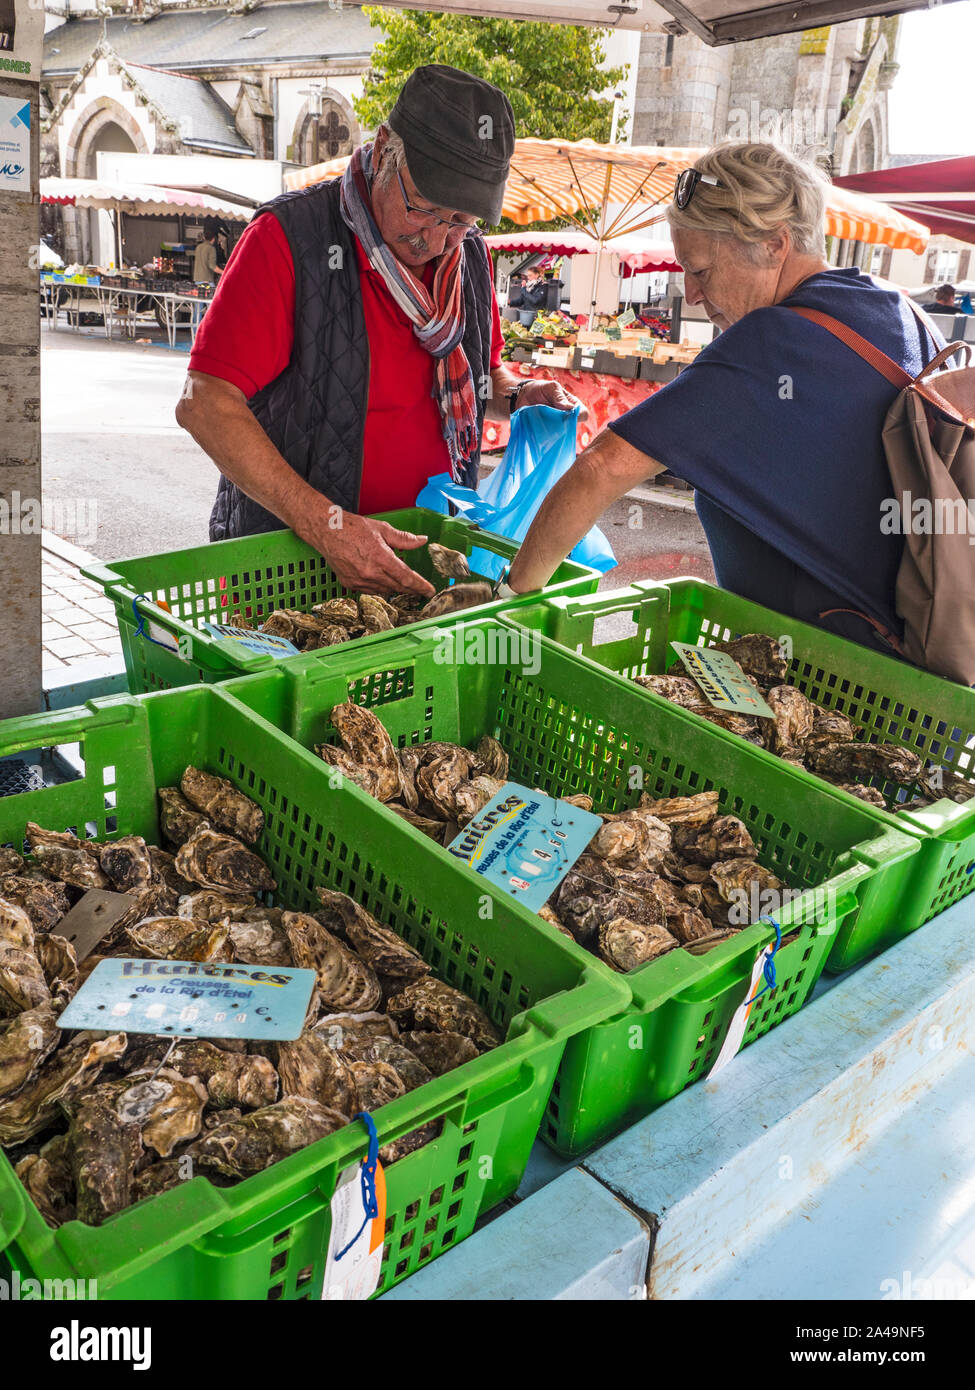 Austern SHOPPER BRETAGNE MARKT Moëlan-sur-Mer wöchentlich Fischmarkt in der Kirche Platz ausgeht, mit frischen Austern Auswahl und anspruchsvollen Kunden Kunden ihre Wahl aus einer Vielzahl von Oyster Container Stockfoto